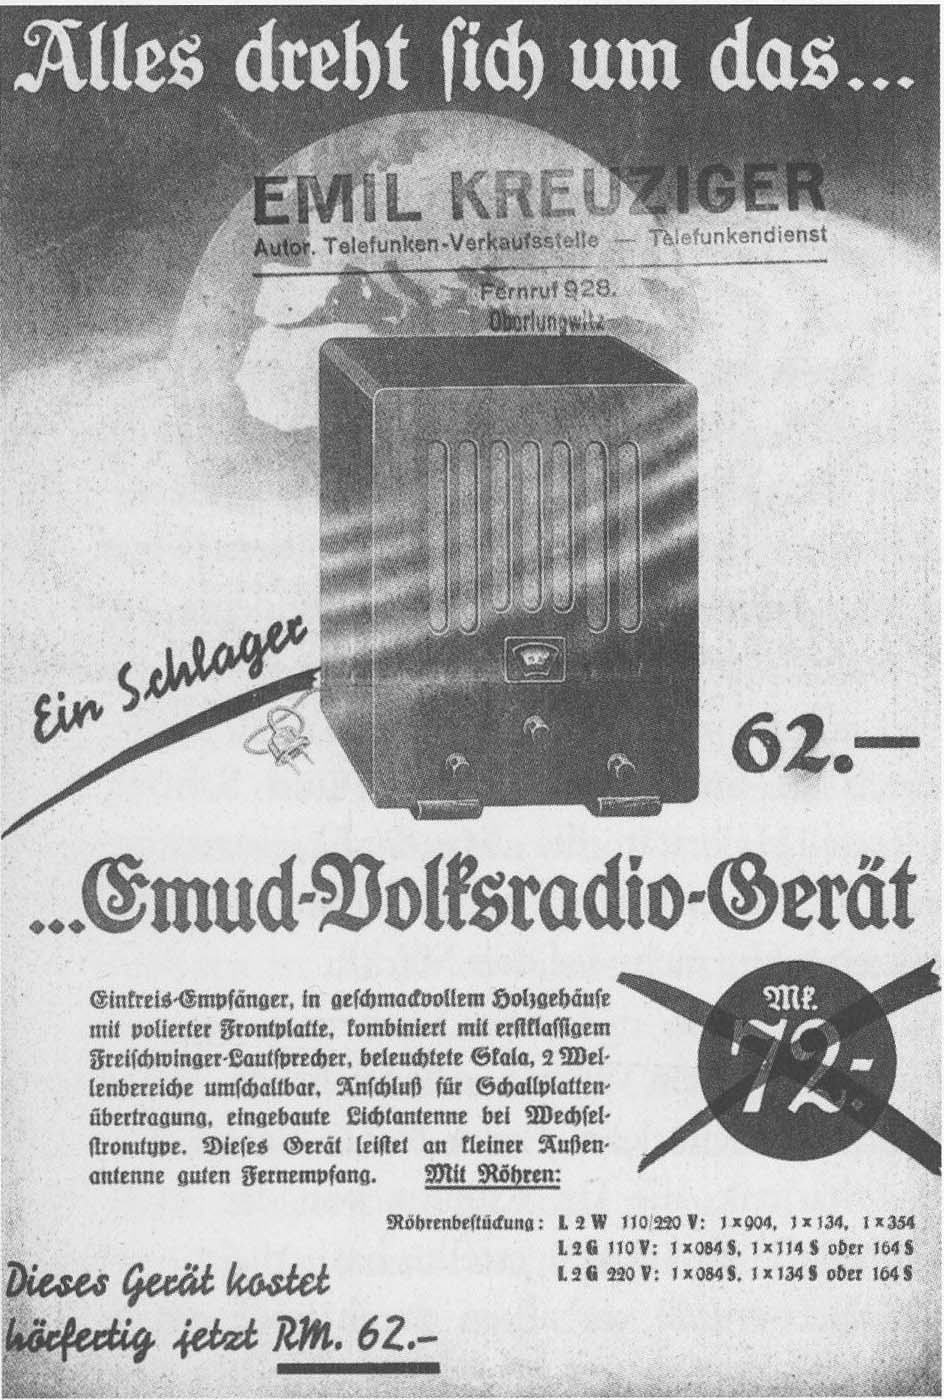 radiotechnik Endpentode statt Triode glich der „VE" dem Emud-Volksradio